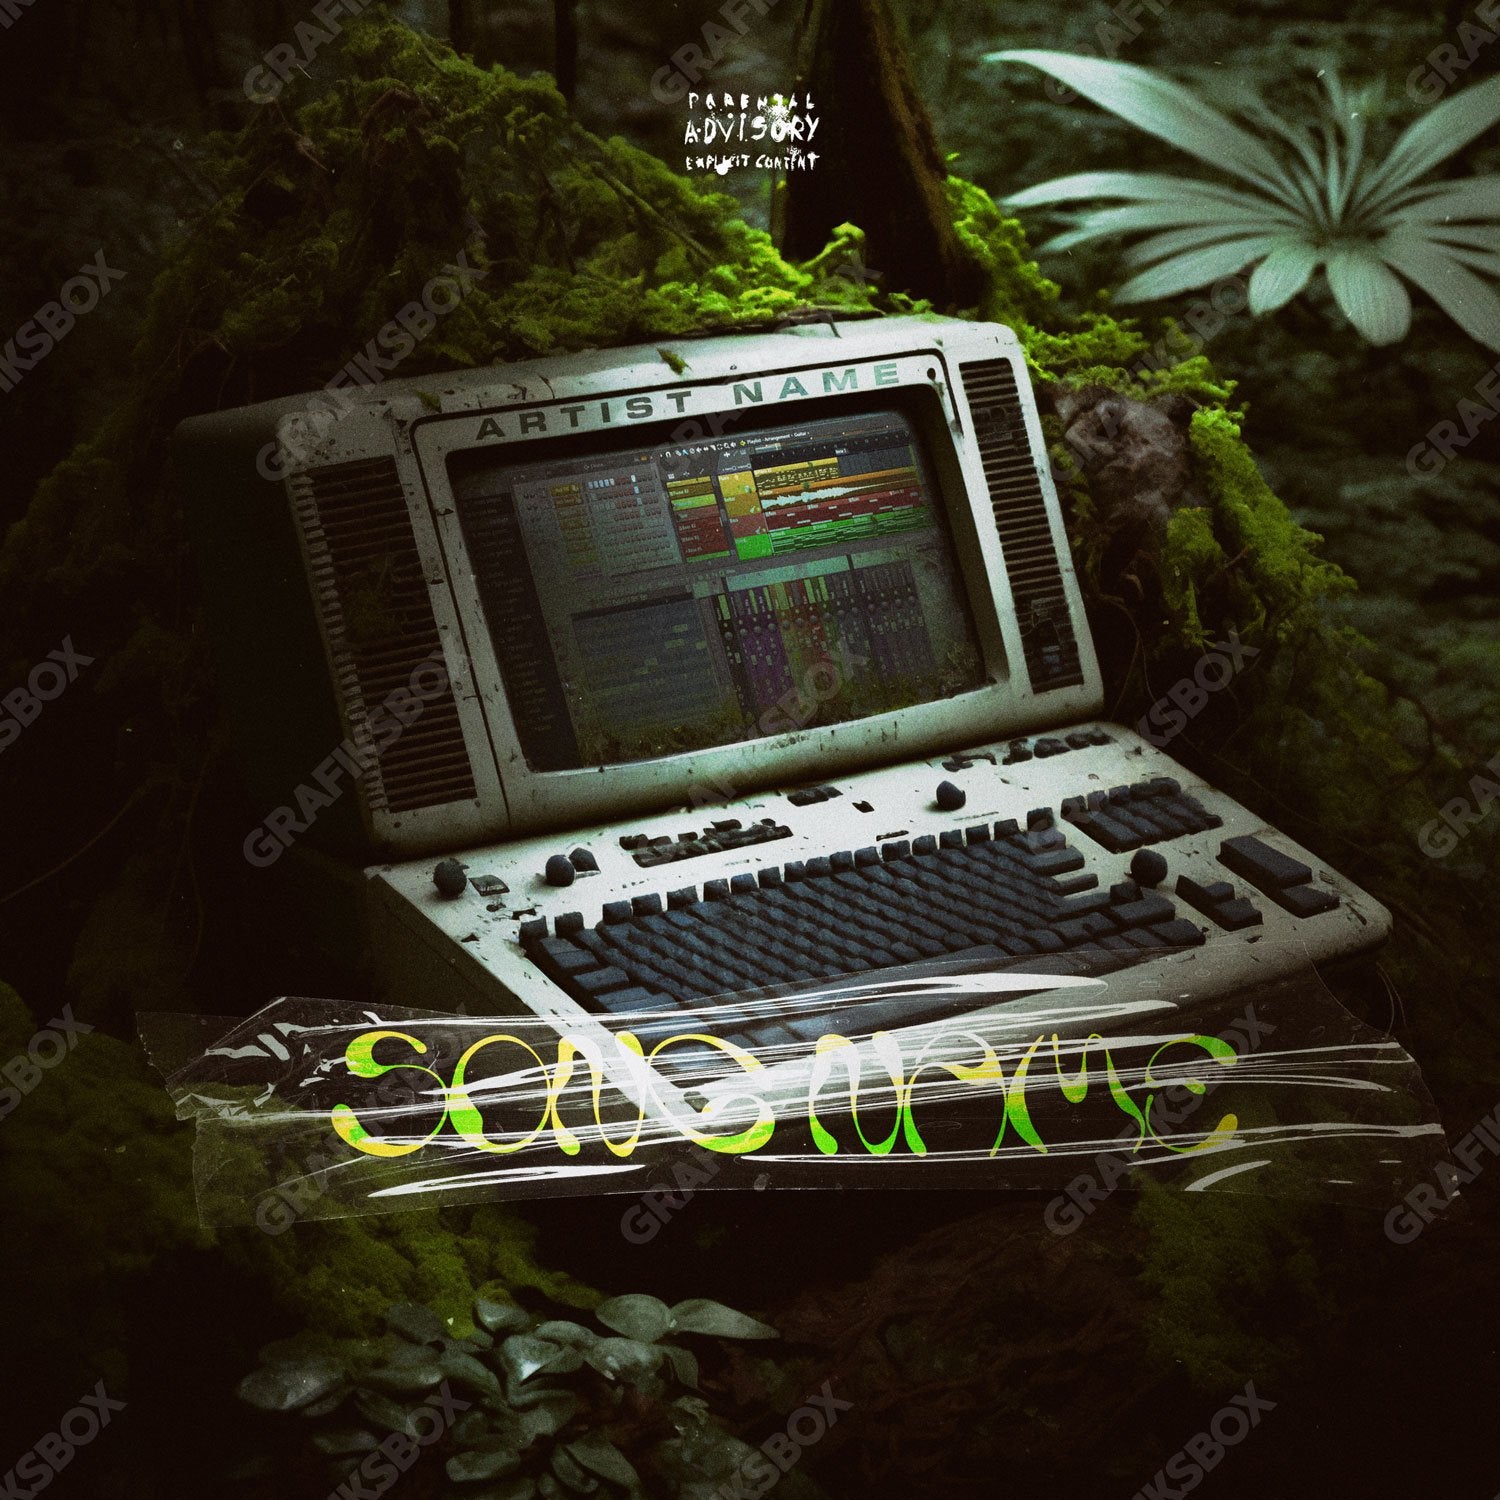 Jungle Session premade cover art